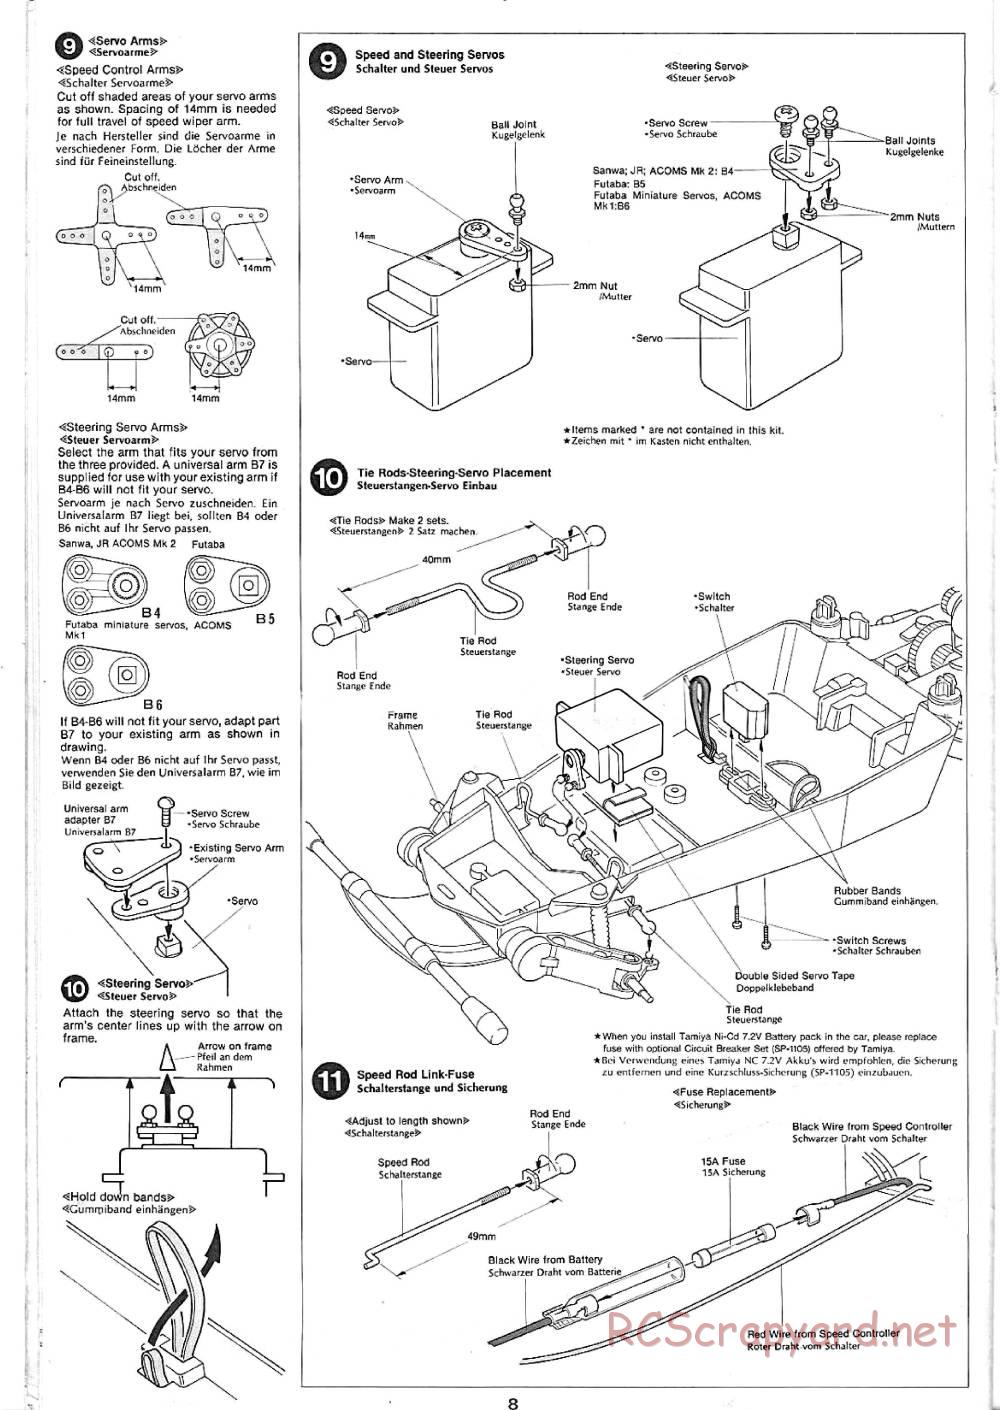 Tamiya - Sand Rover - 58024 - Manual - Page 8